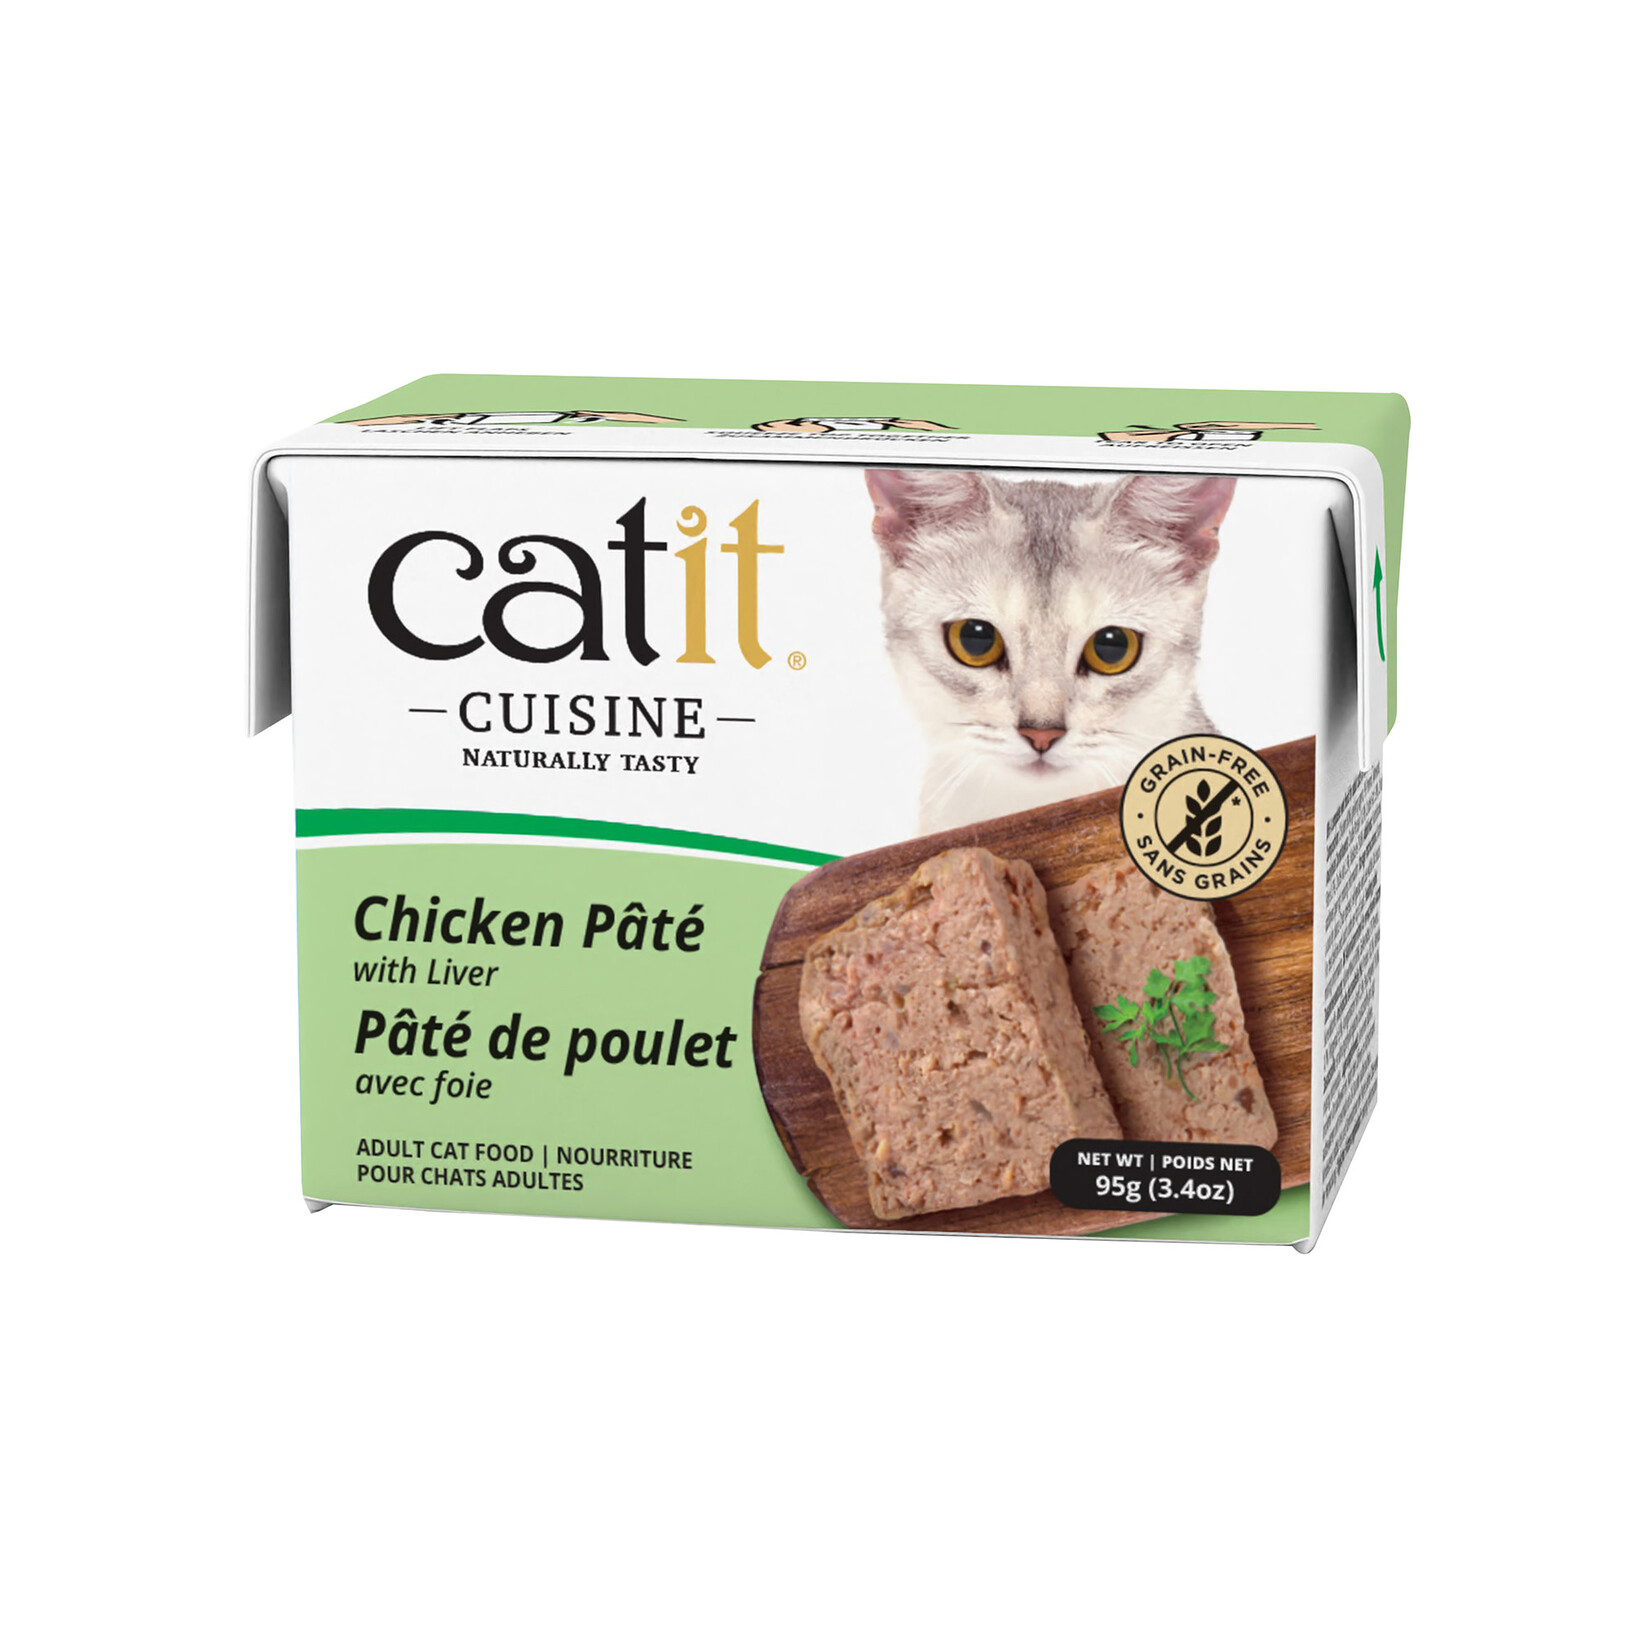 CAT IT Catit Cuisine Chicken Pâté with Liver - 95 g